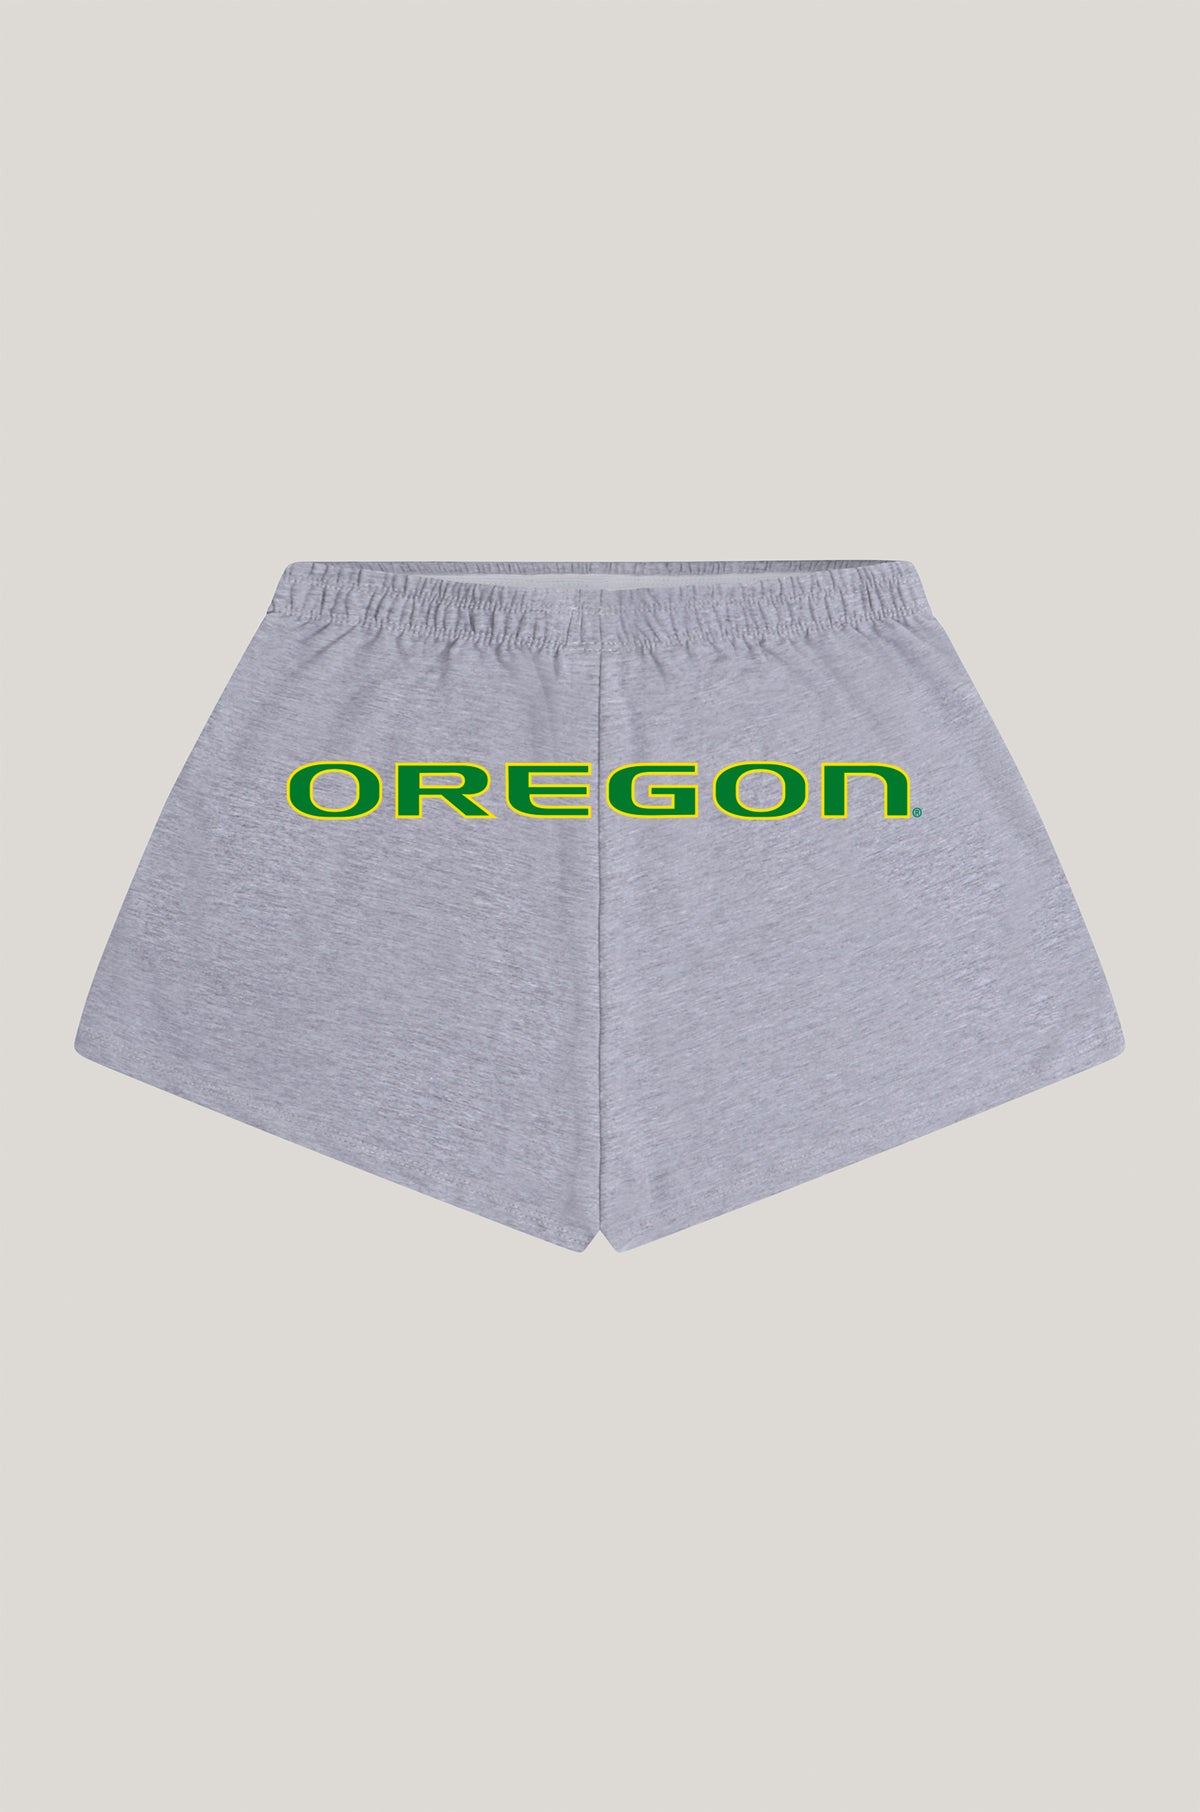 University of Oregon P.E. Shorts